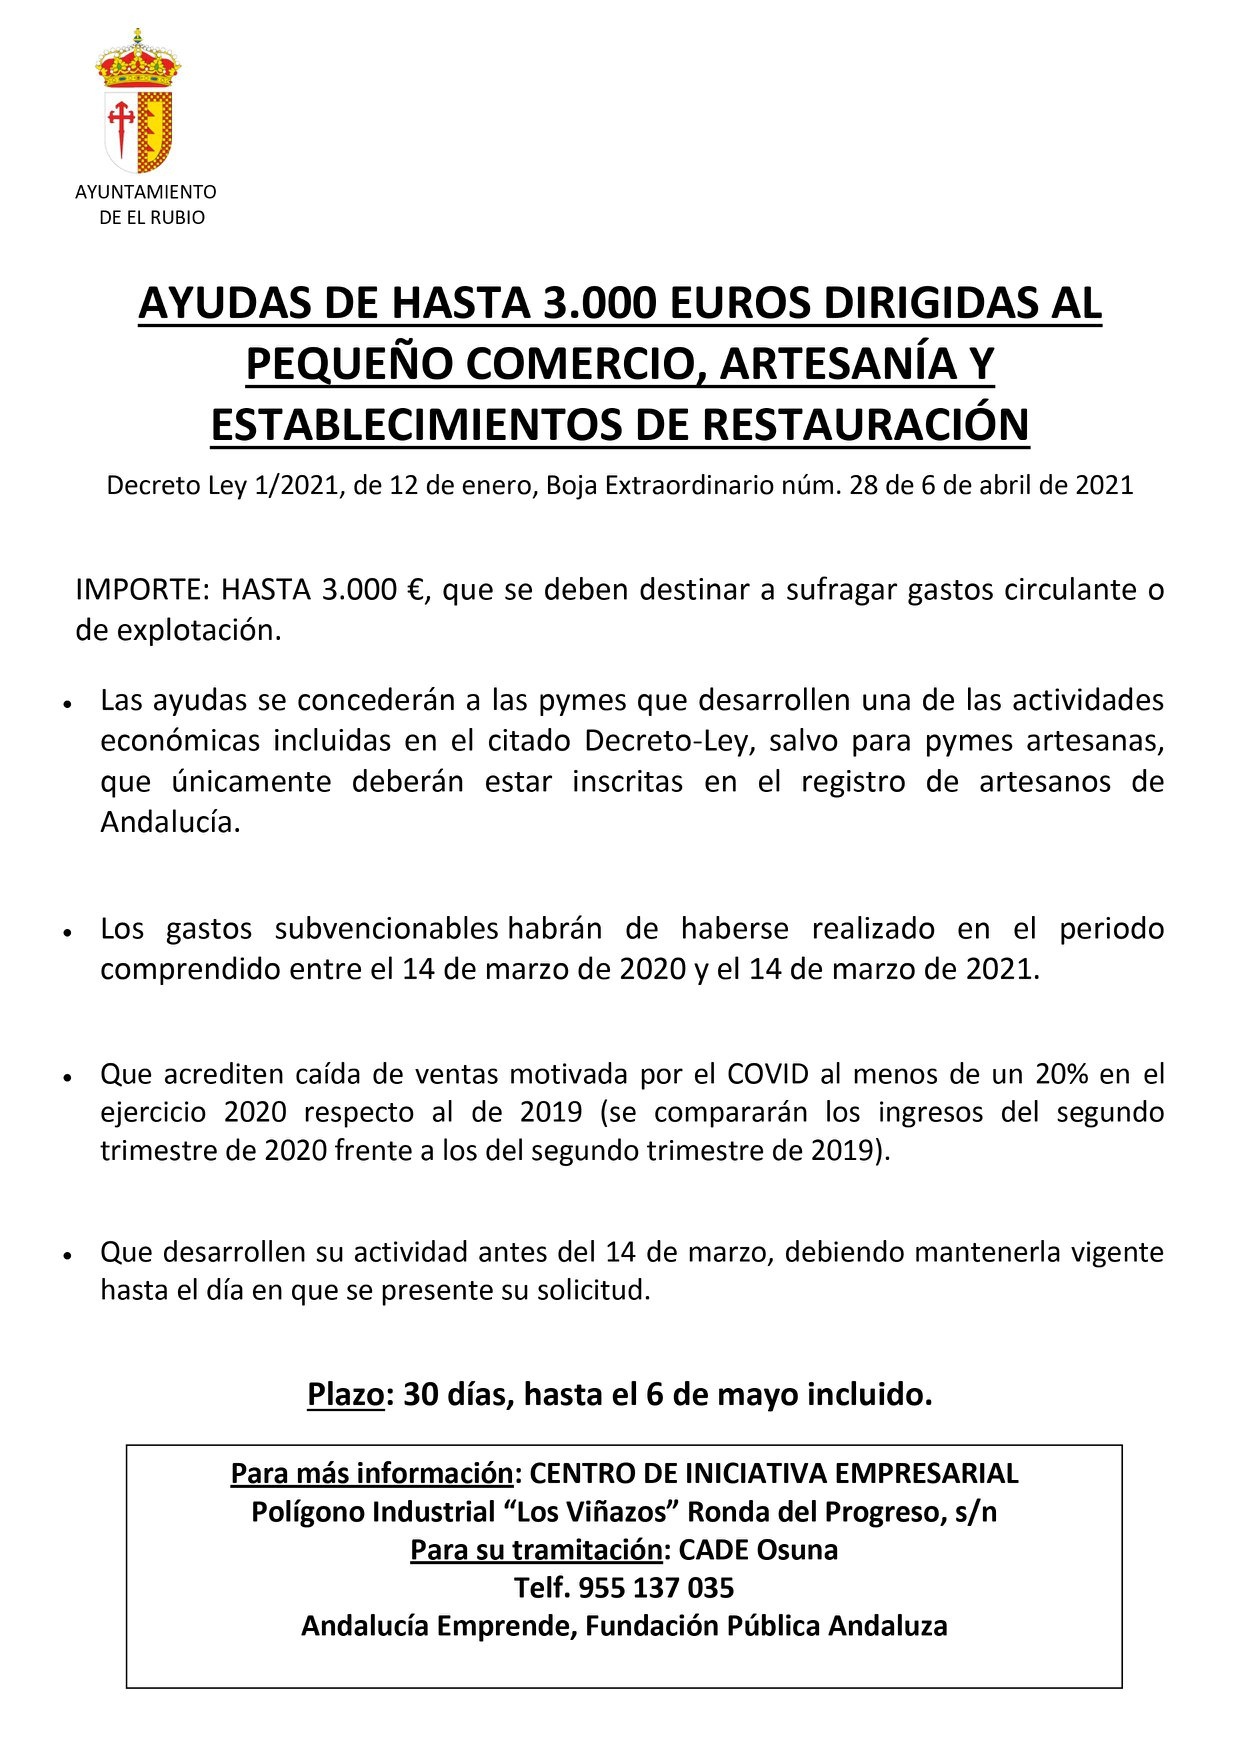 107.-AYUDAS DE HASTA 3.000 EUROS DIRIGIDAS AL PEQUEÑO COMERCIO, ARTESANÍA Y ESTABLECIMIENTOS DE RE